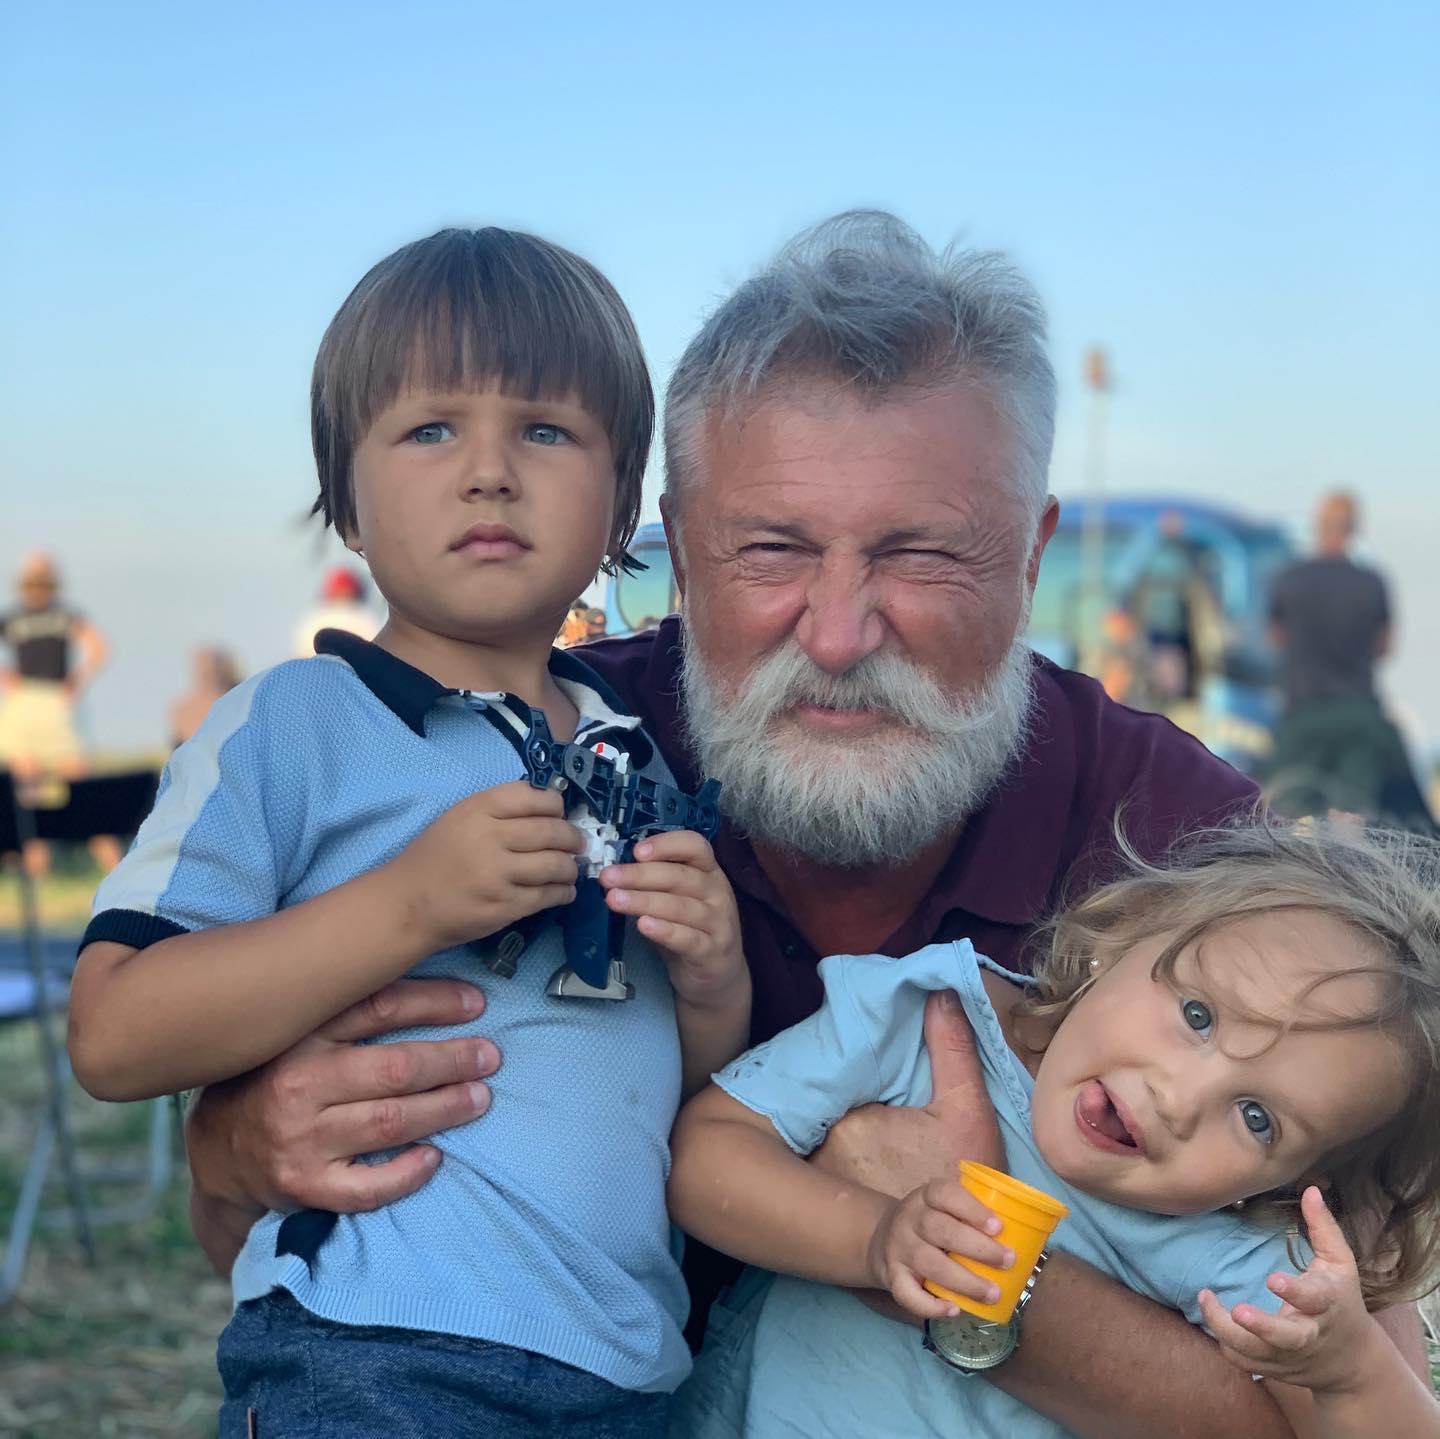 “Папик“ Станислав Боклан показал редкое фото со своими подросшими внуками